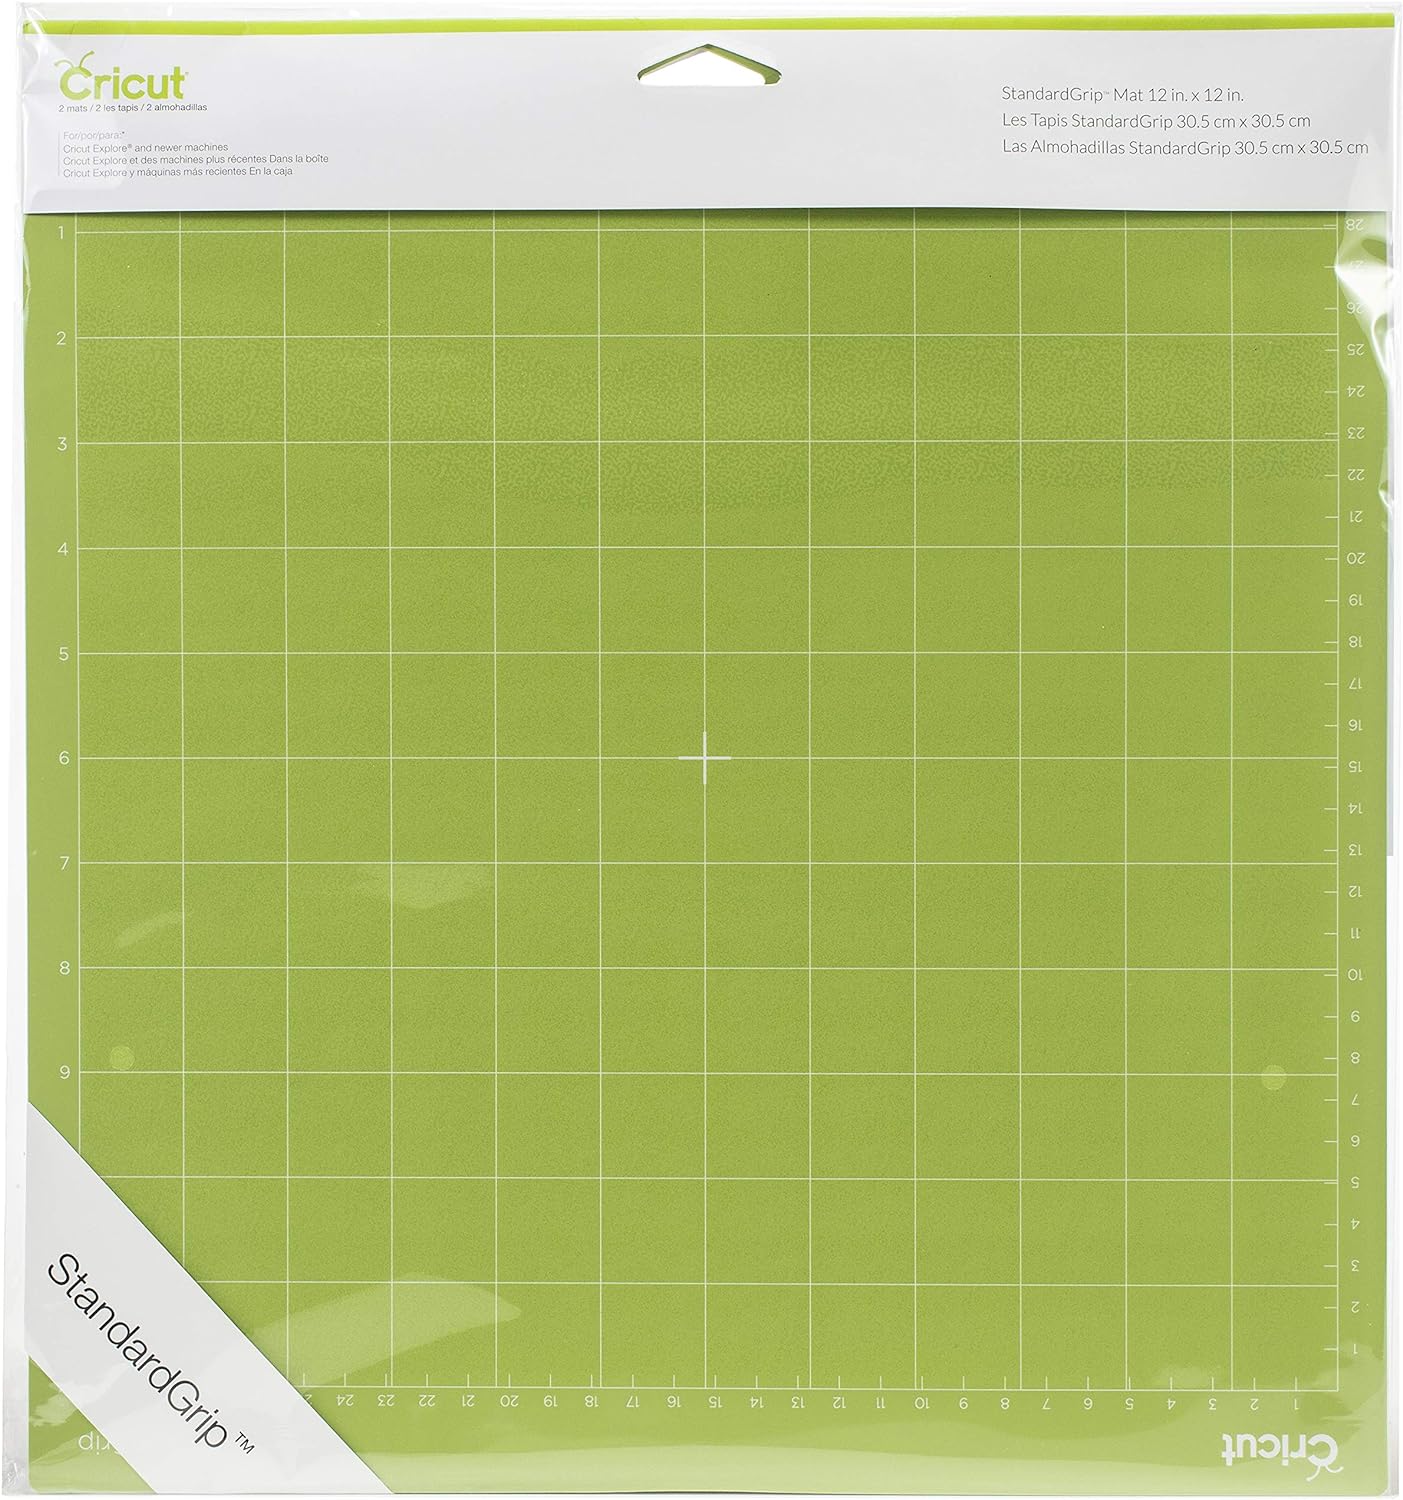 how long do cricut cutting mats last